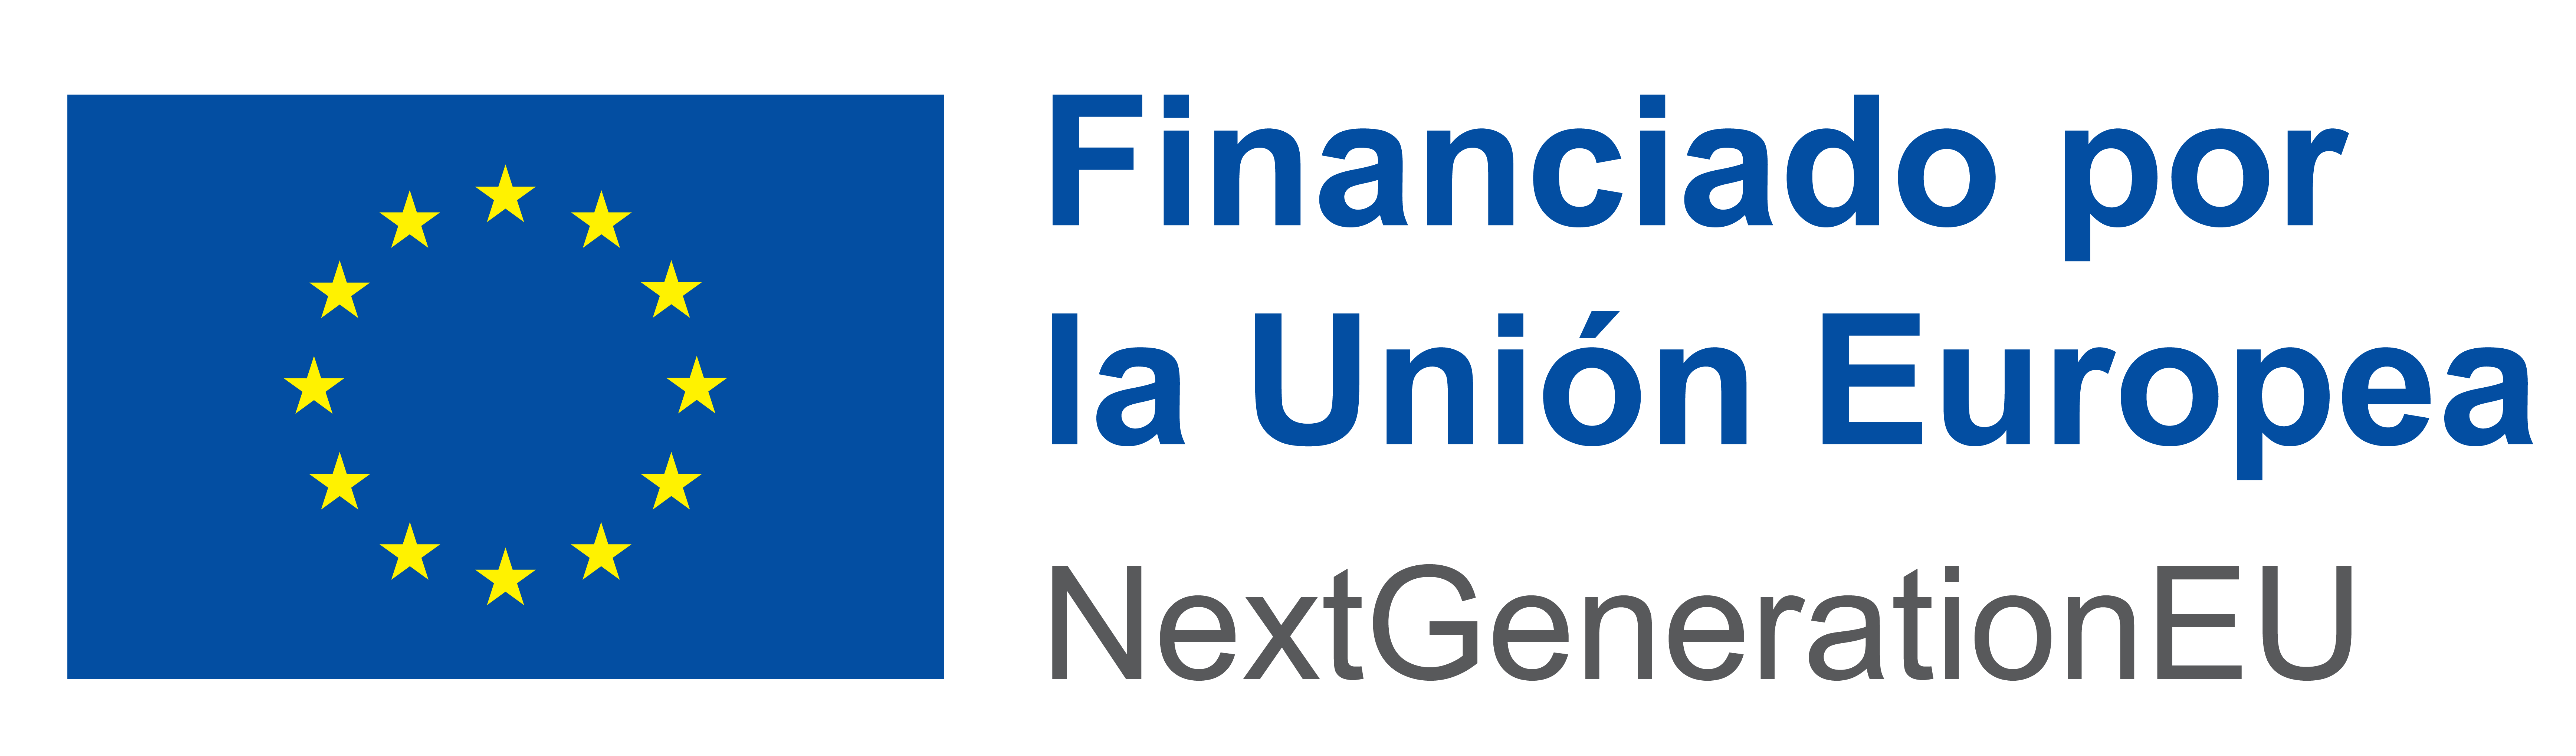 Financiado por la Unión Europea. NextGenerationEU